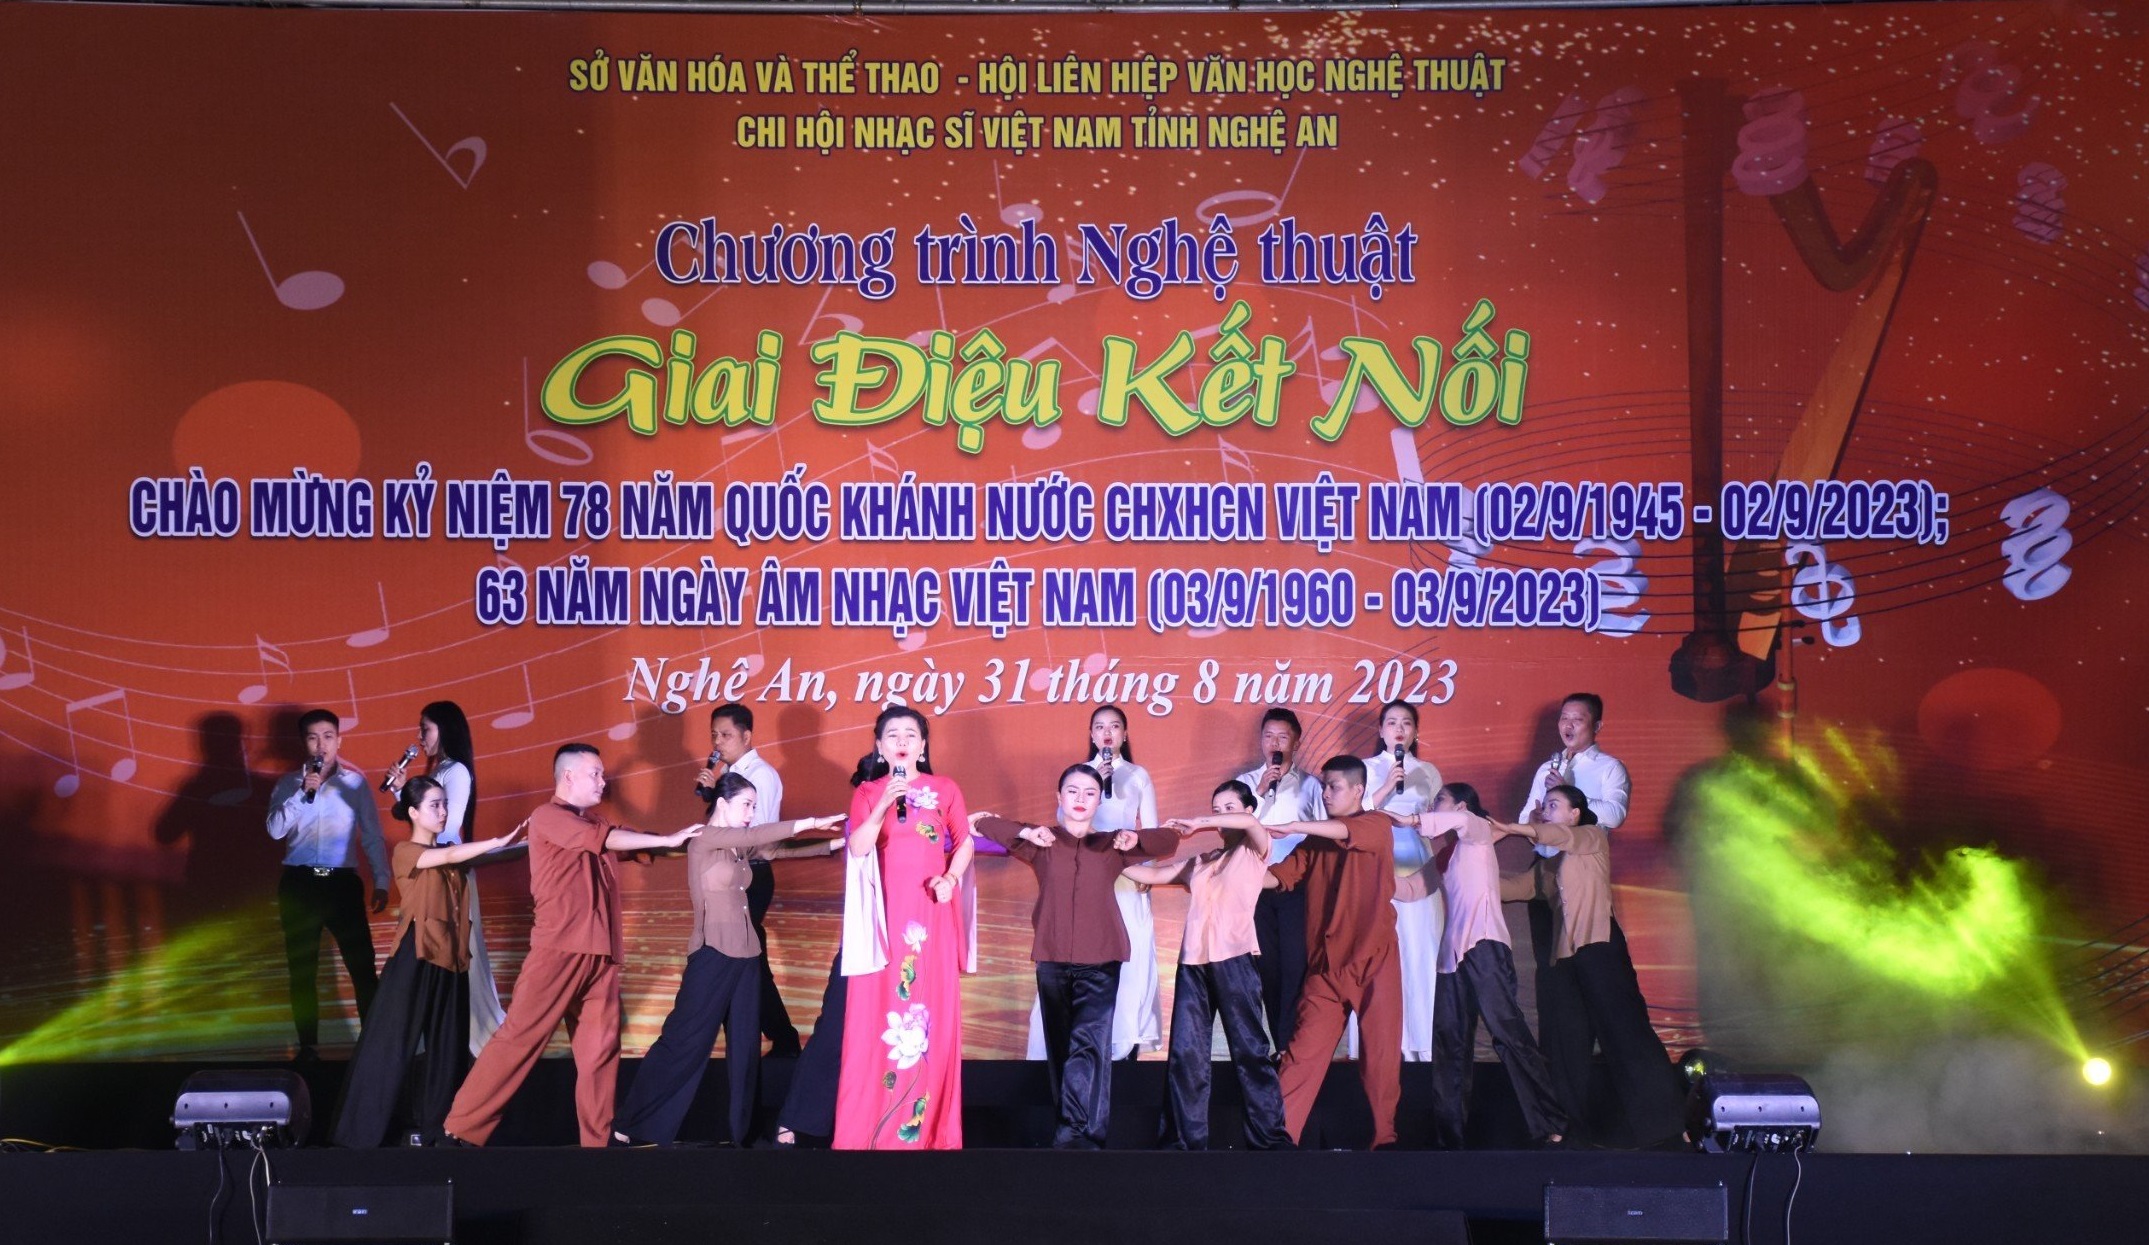 Chương trình nghệ thuật “Giai điệu kết nối” mừng ngày Âm nhạc Việt Nam